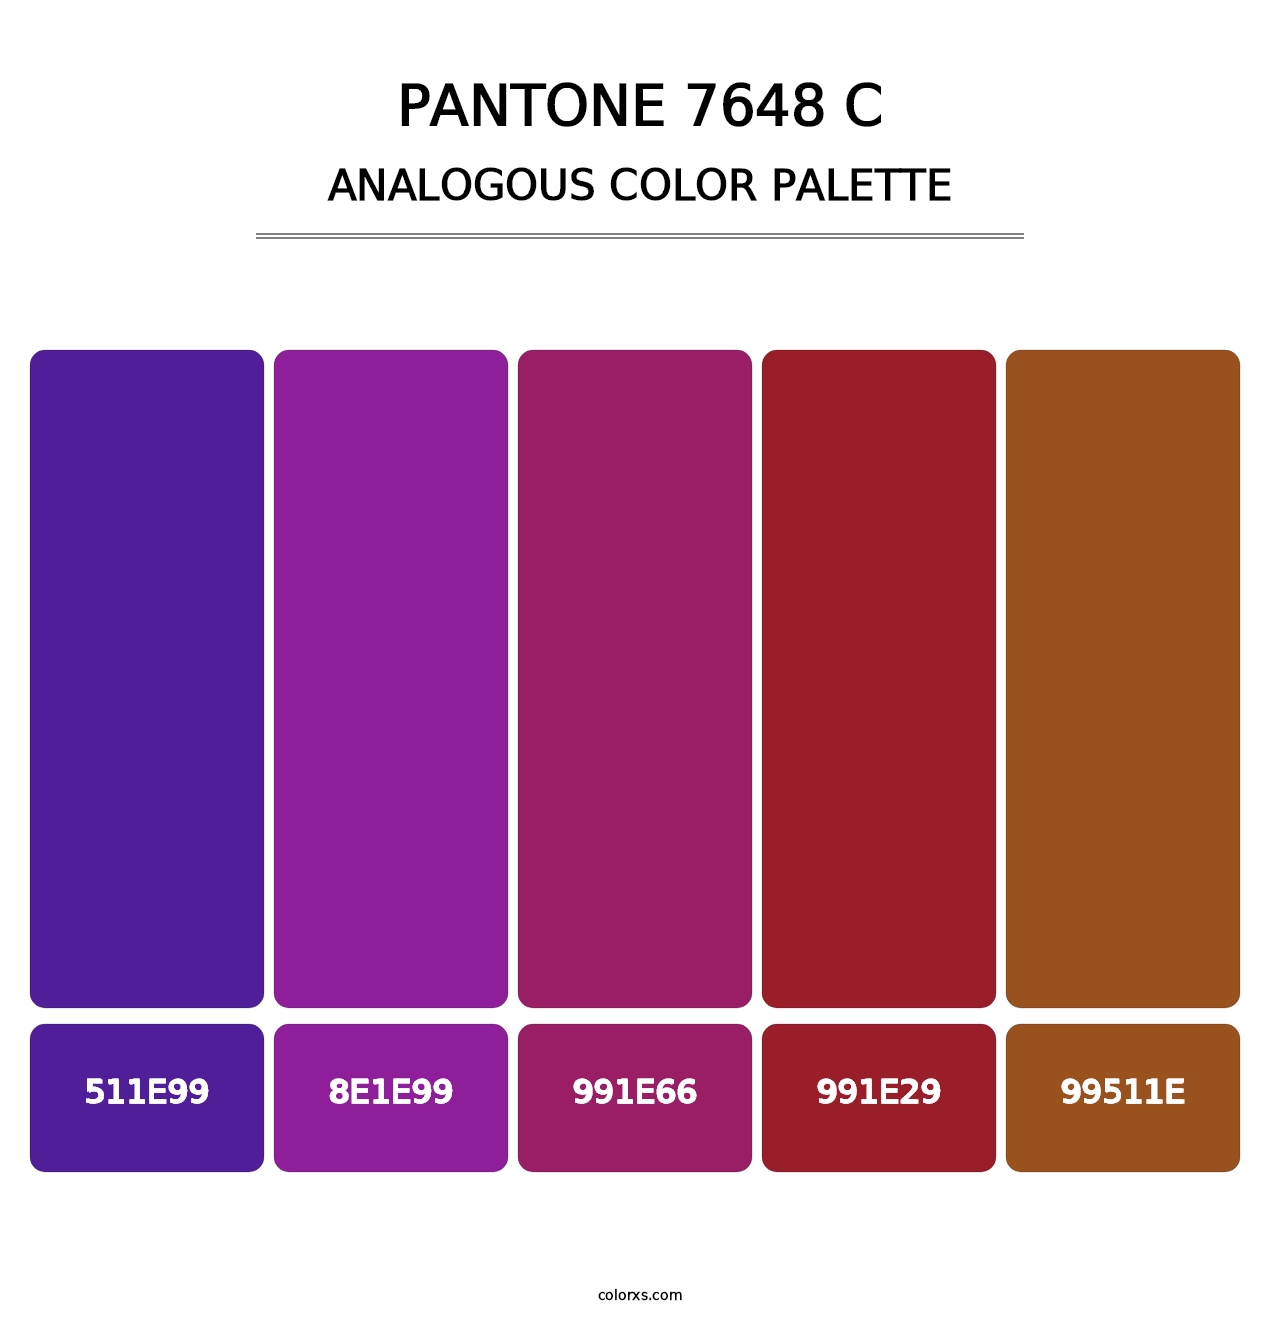 PANTONE 7648 C - Analogous Color Palette